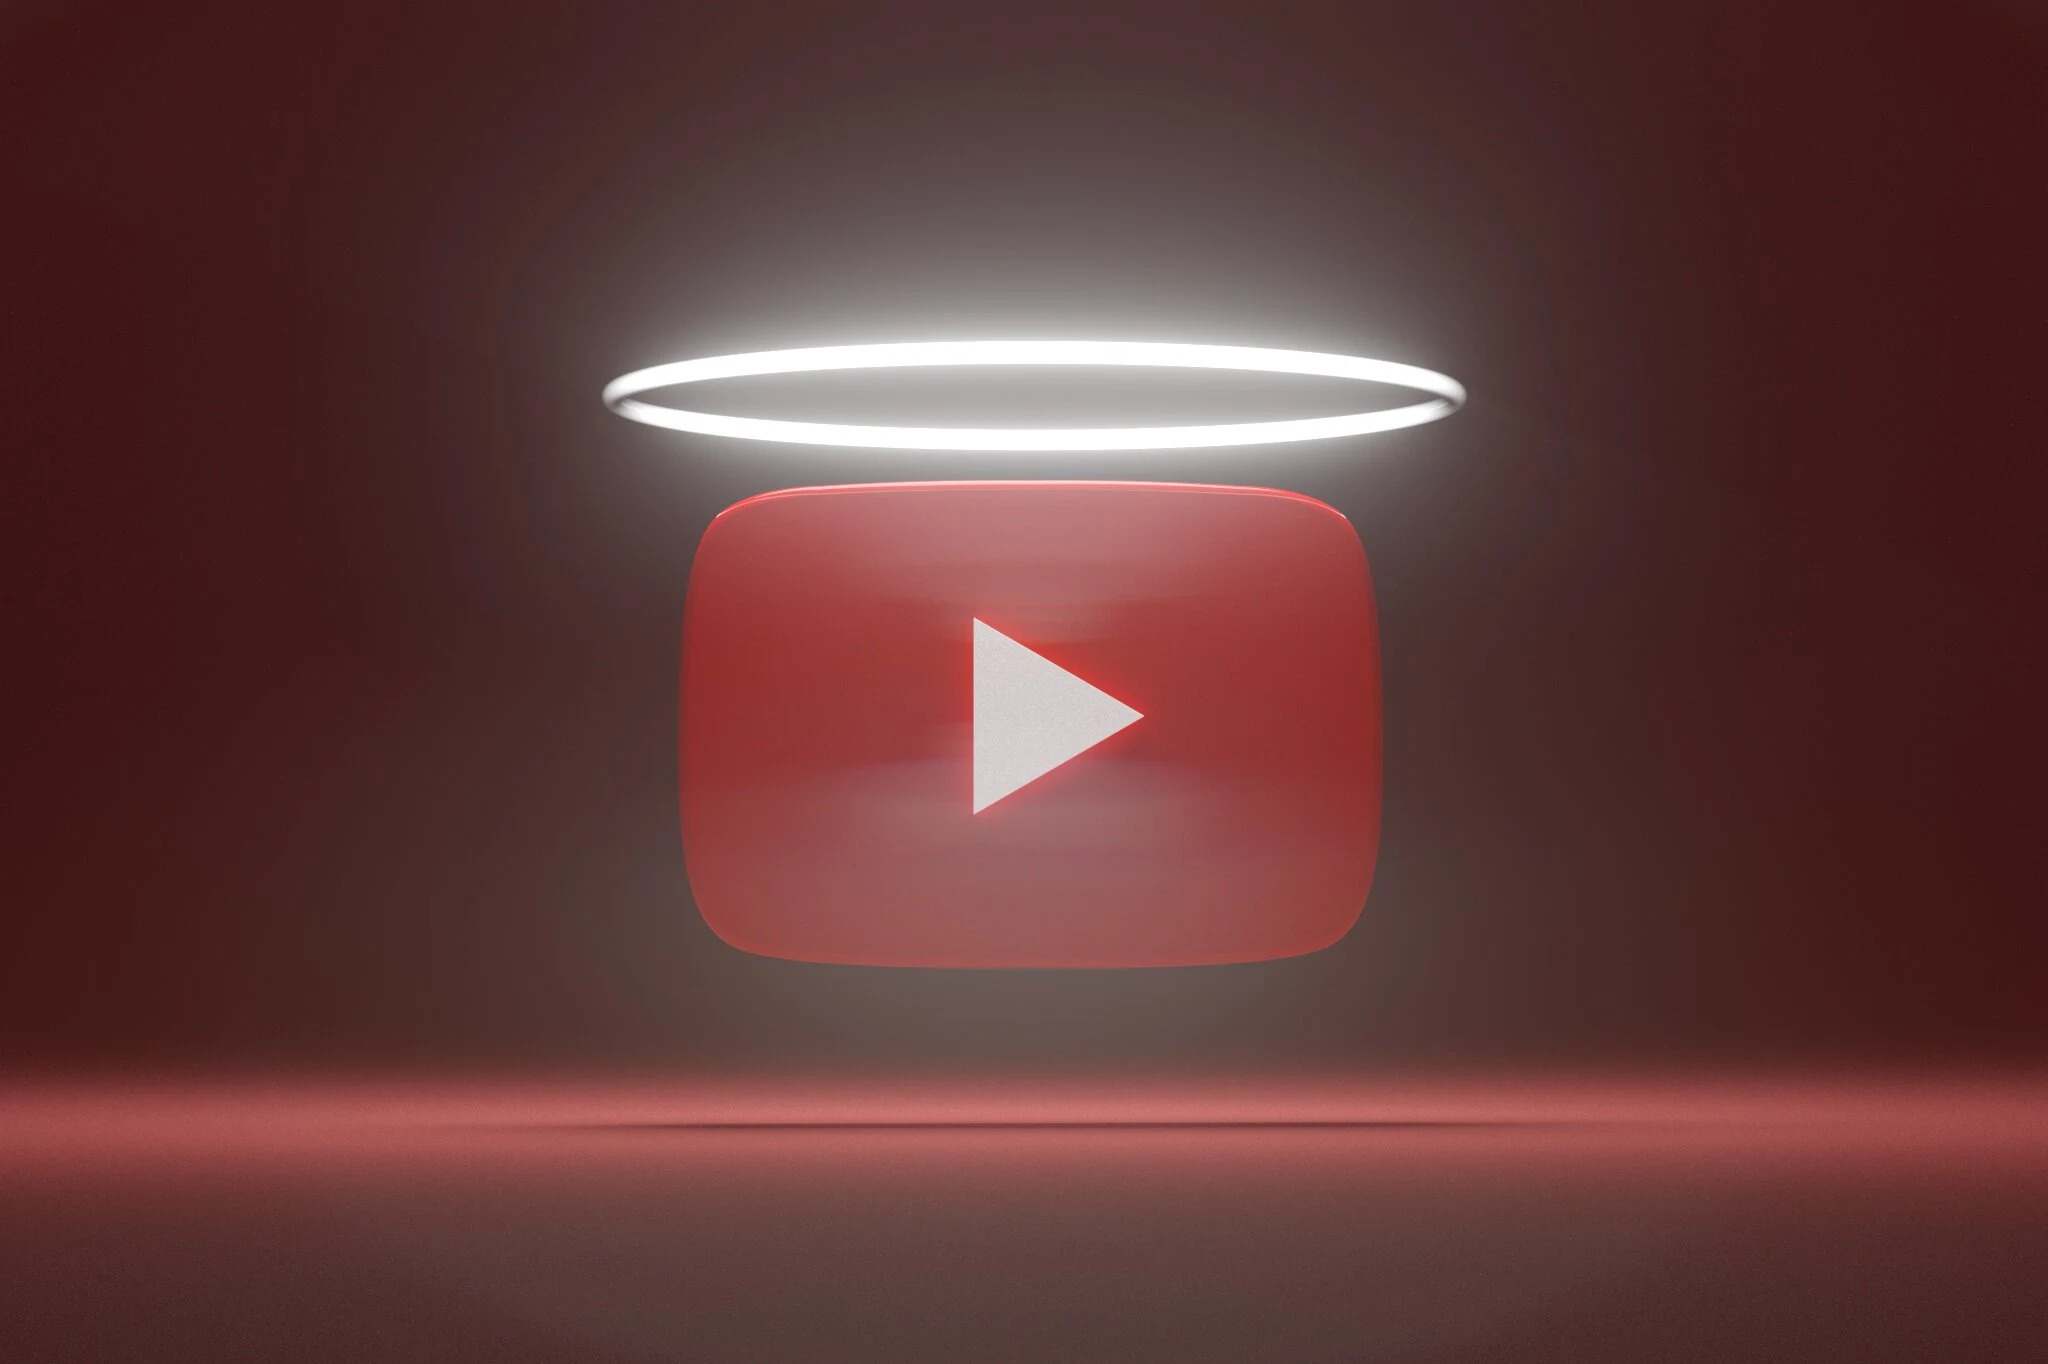 ليس 5 إعلانات ... يوتيوب قد تجبرك على مشاهدة حتى 10 إعلانات غير قابلة للتخطي!